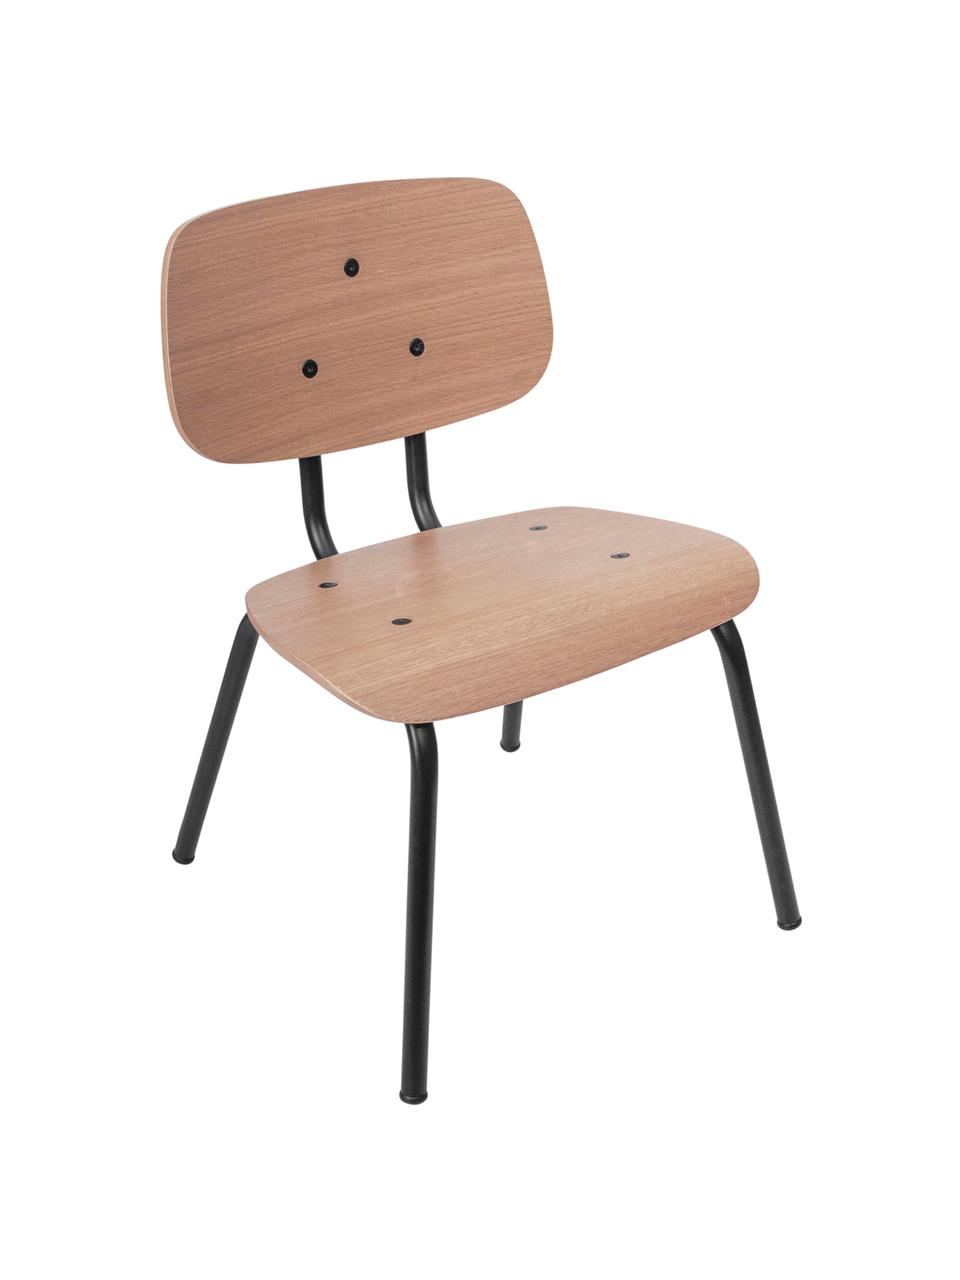 Krzesło dla dzieci Oakee, Stelaż: metal lakierowany, Blat: drewno bukowe z fornir z , Drewno dębowe, S 37 x W 57 cm